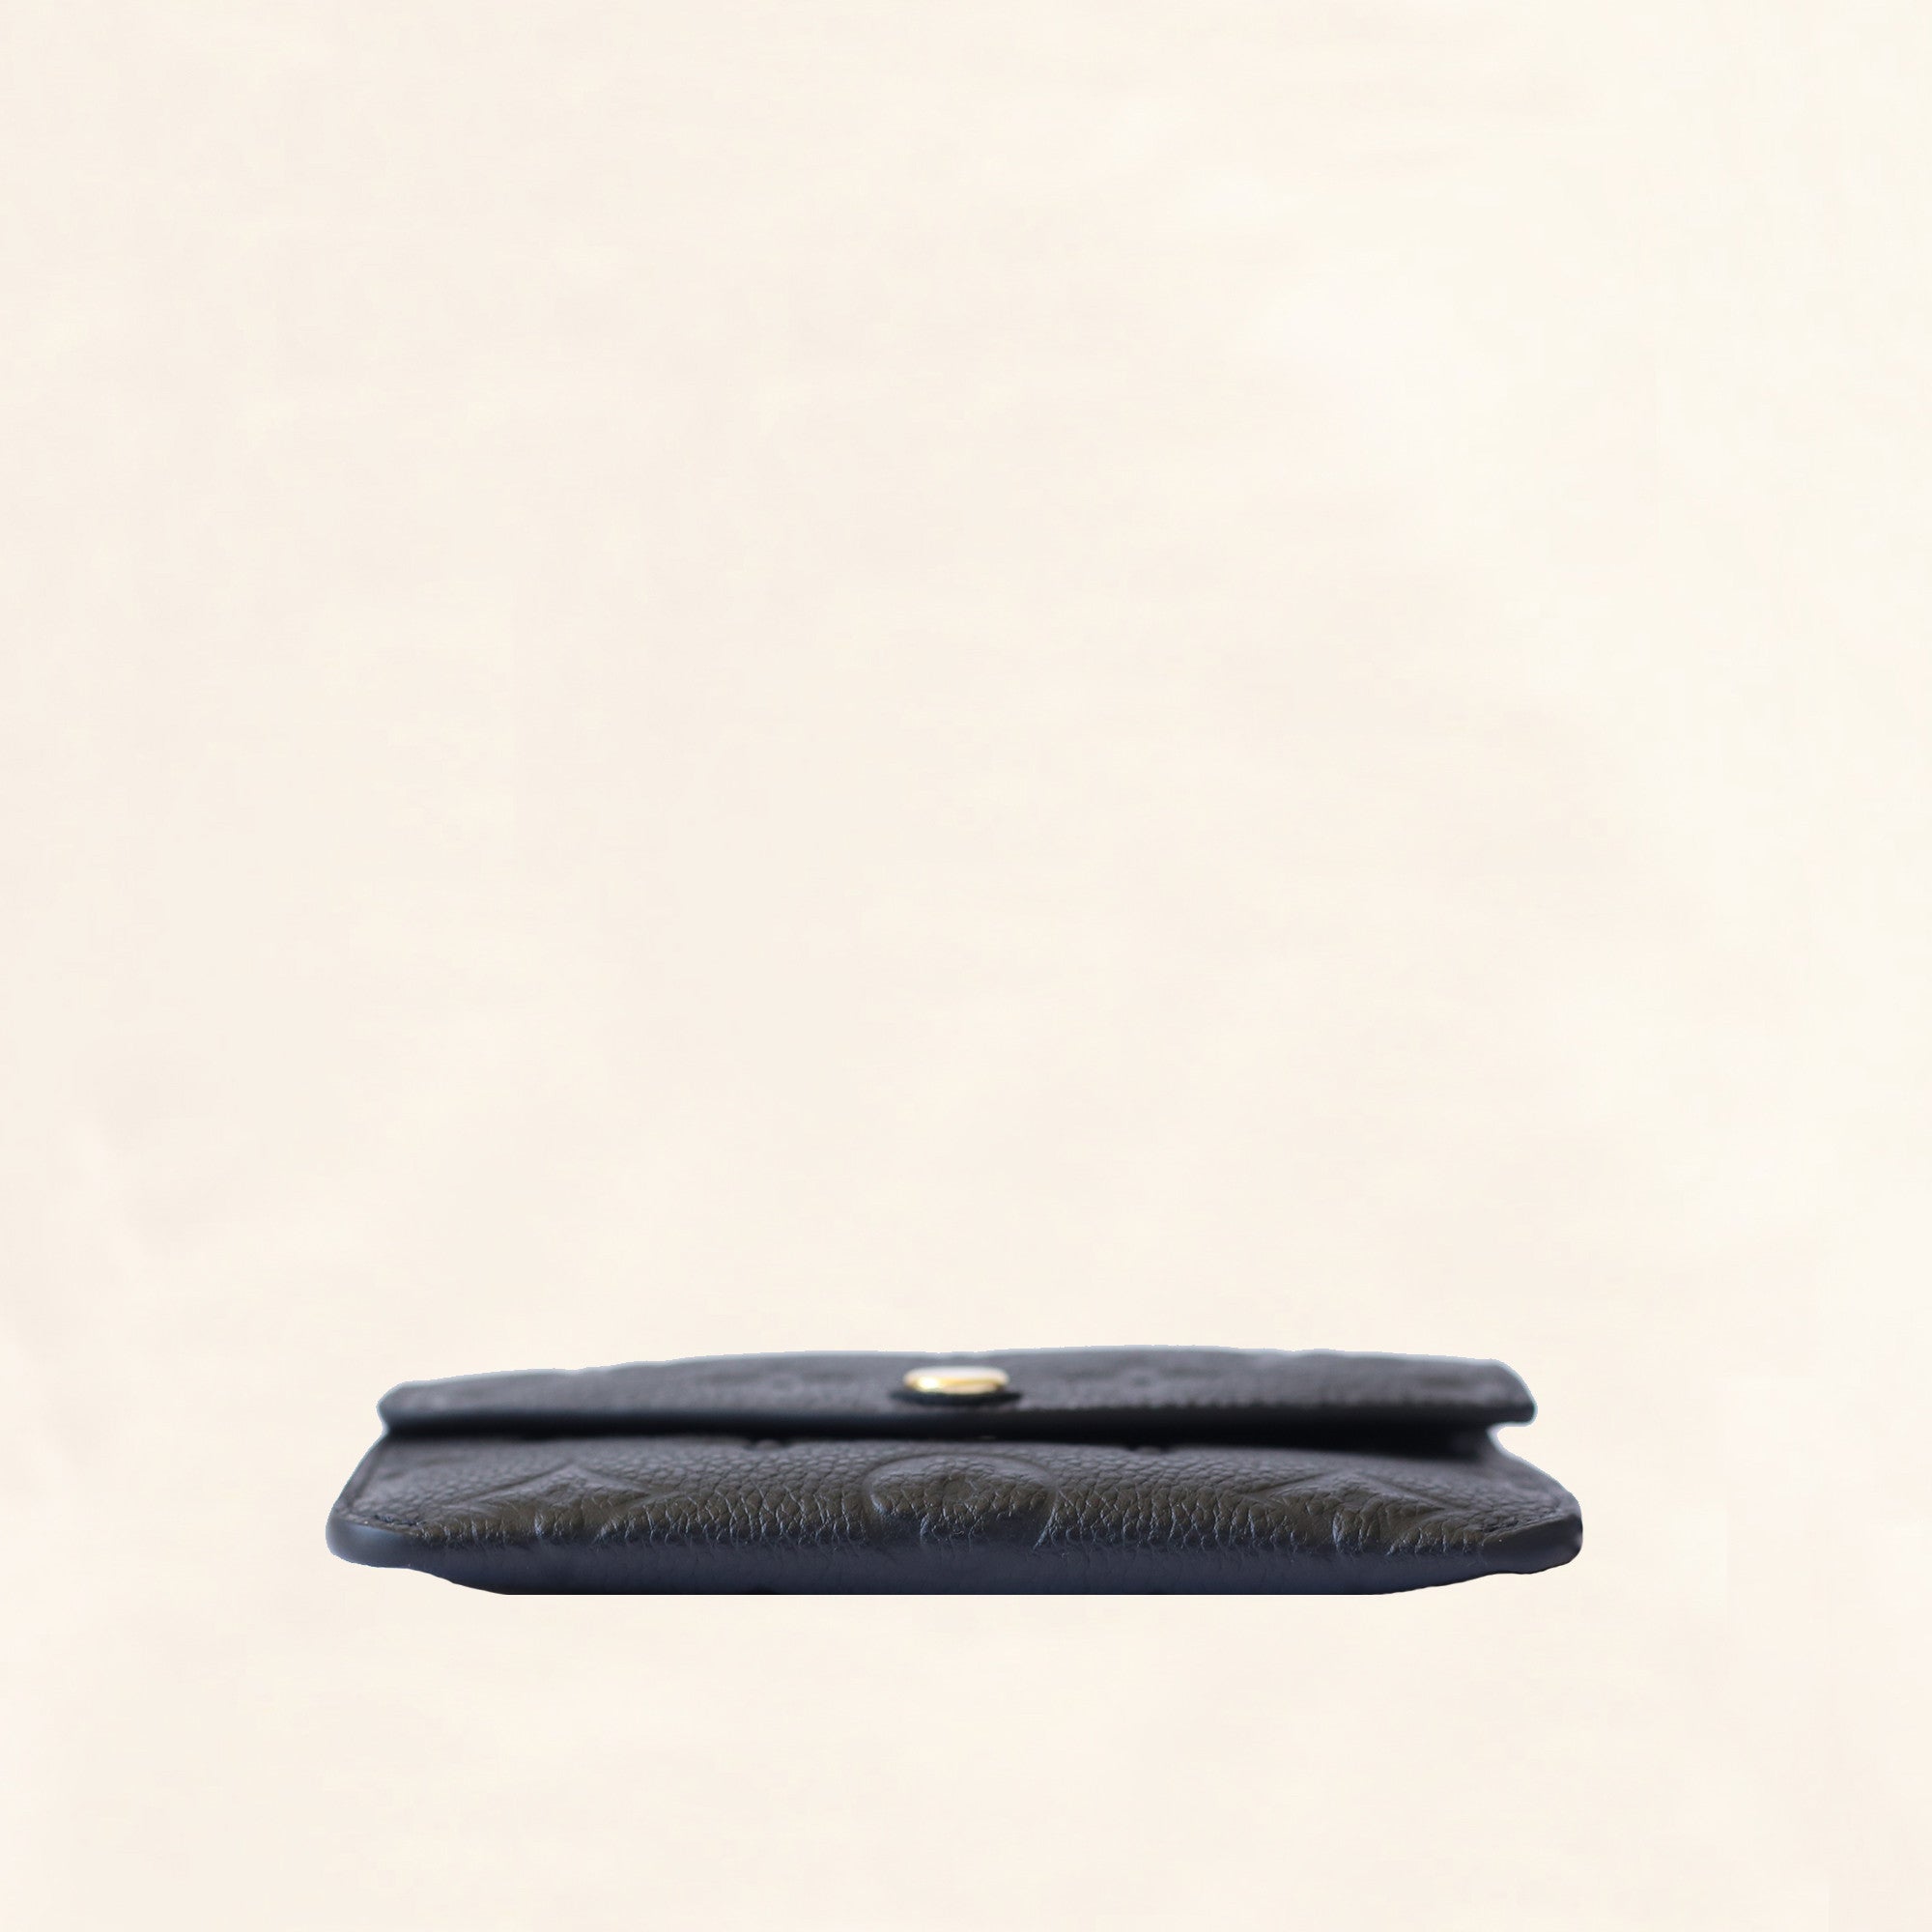 Louis Vuitton Key Pouch, Black, One Size